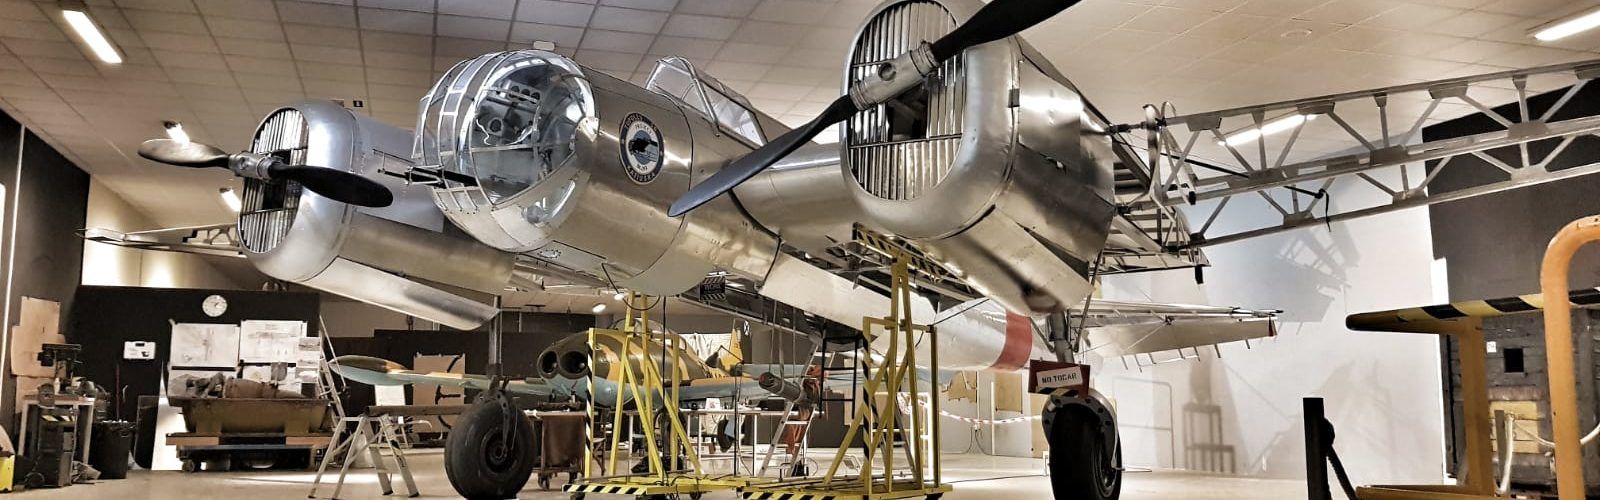 Els avions del Centre d’Aviació Històrica de la Sénia formaran part d’una exposició sobre la Guerra Civil al Museu Nacional d’Art de Catalunya